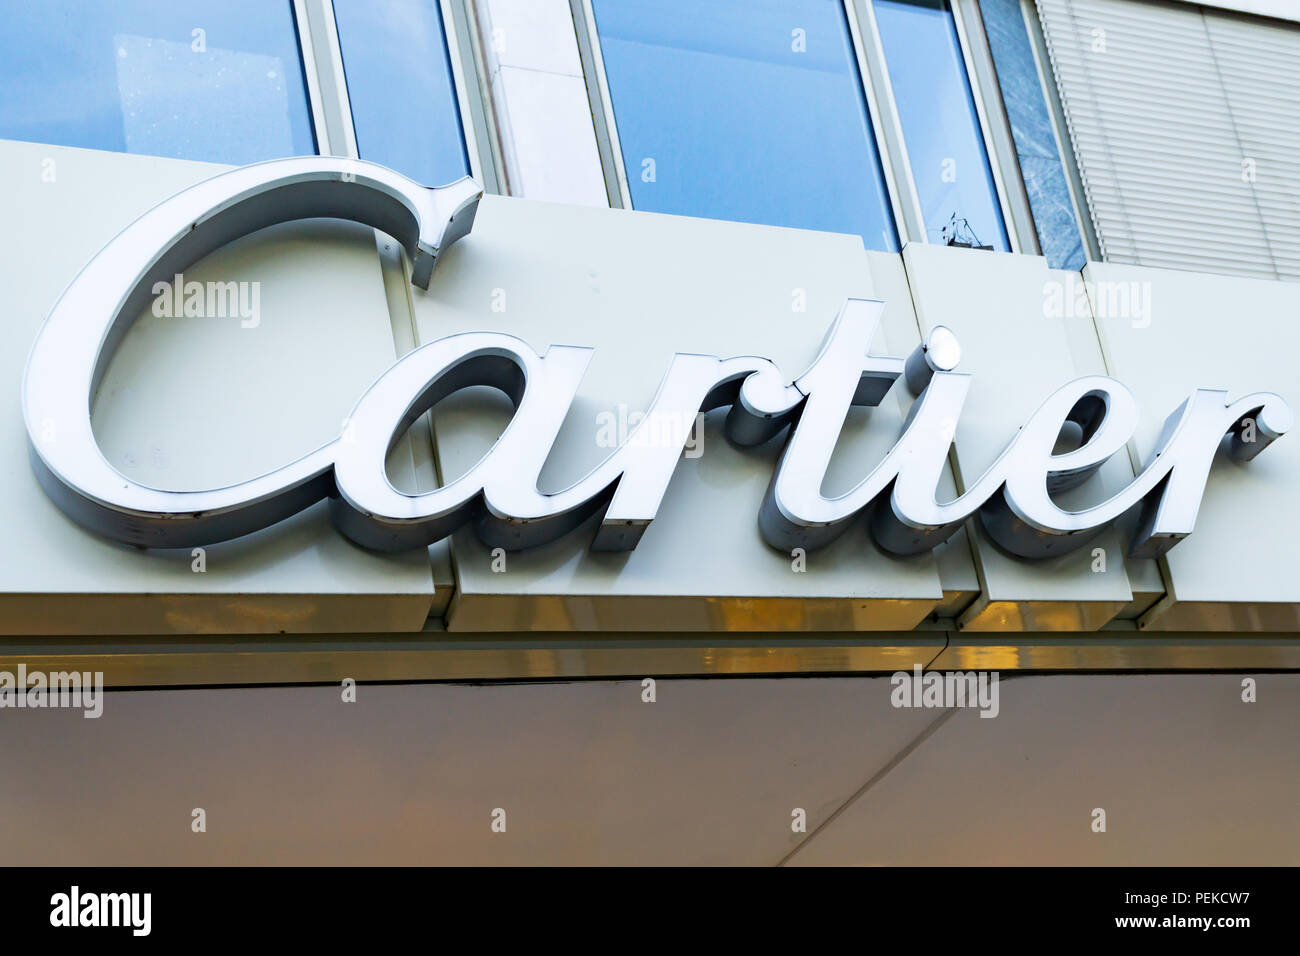 CARTIER logo on a facade. Cartier 